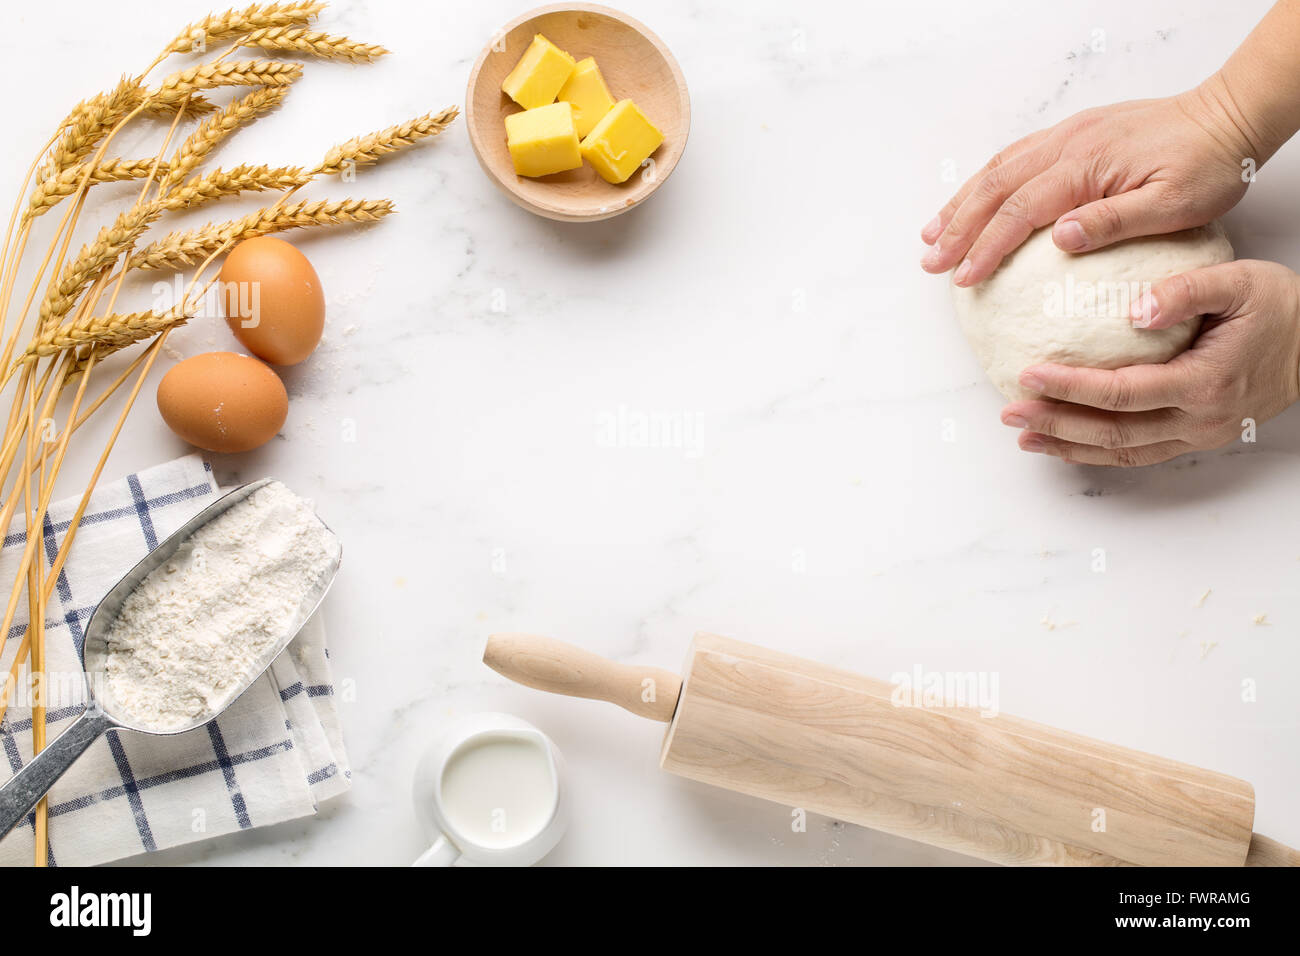 Backen Kuchen, Teig Rezept-Zutaten (Eiern, Mehl, Milch, Butter, Zucker) auf weißen Tisch. Stockfoto